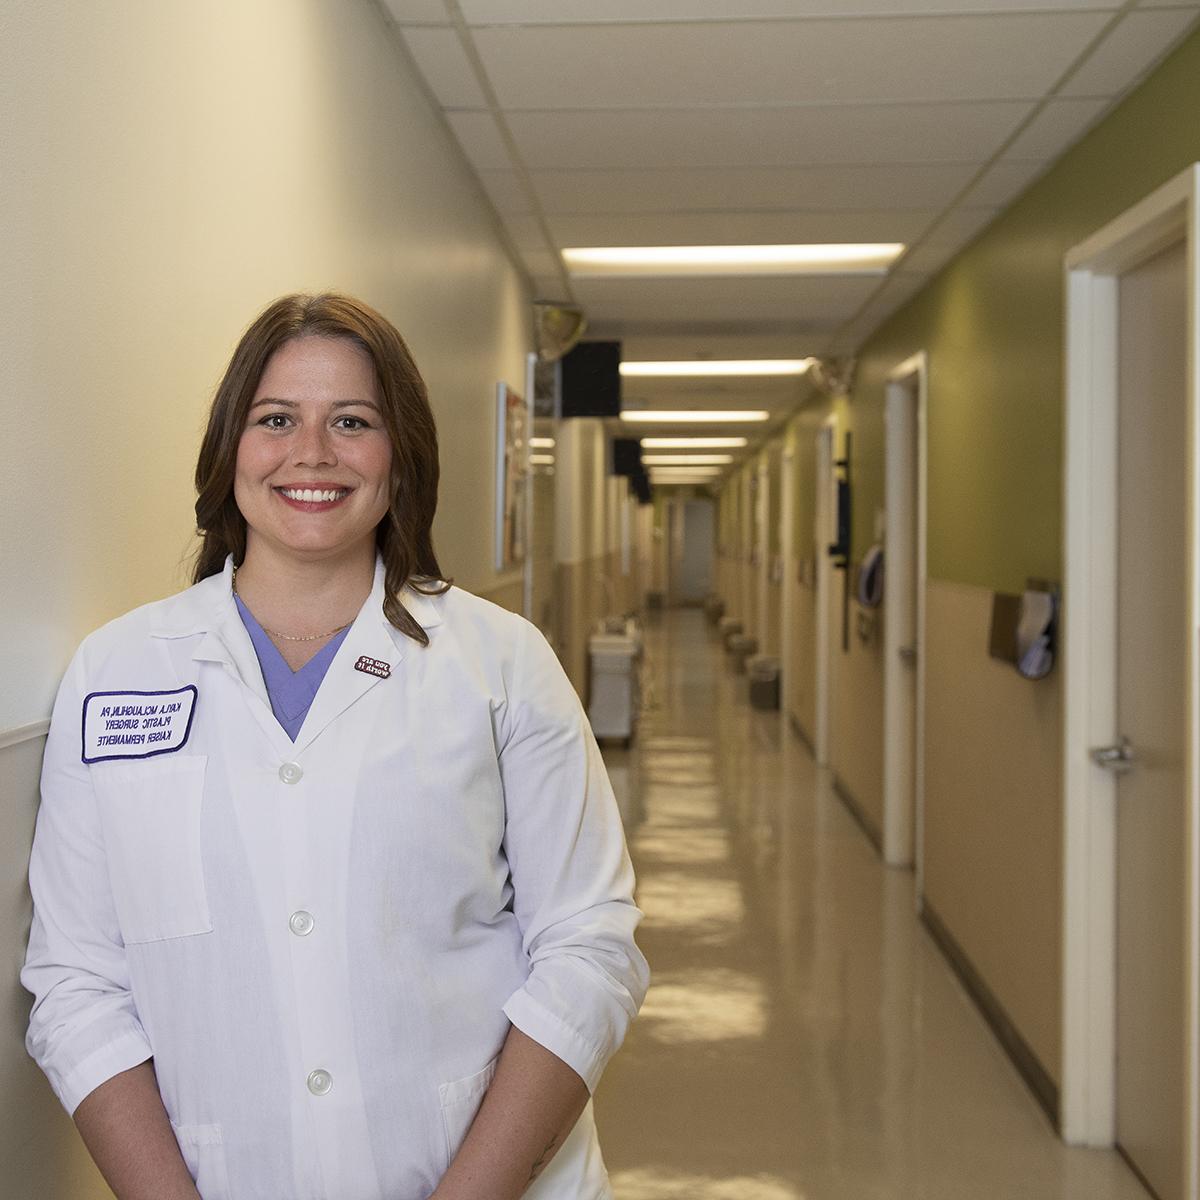 凯拉·麦克劳克林身穿白衣在医院走廊微笑的照片